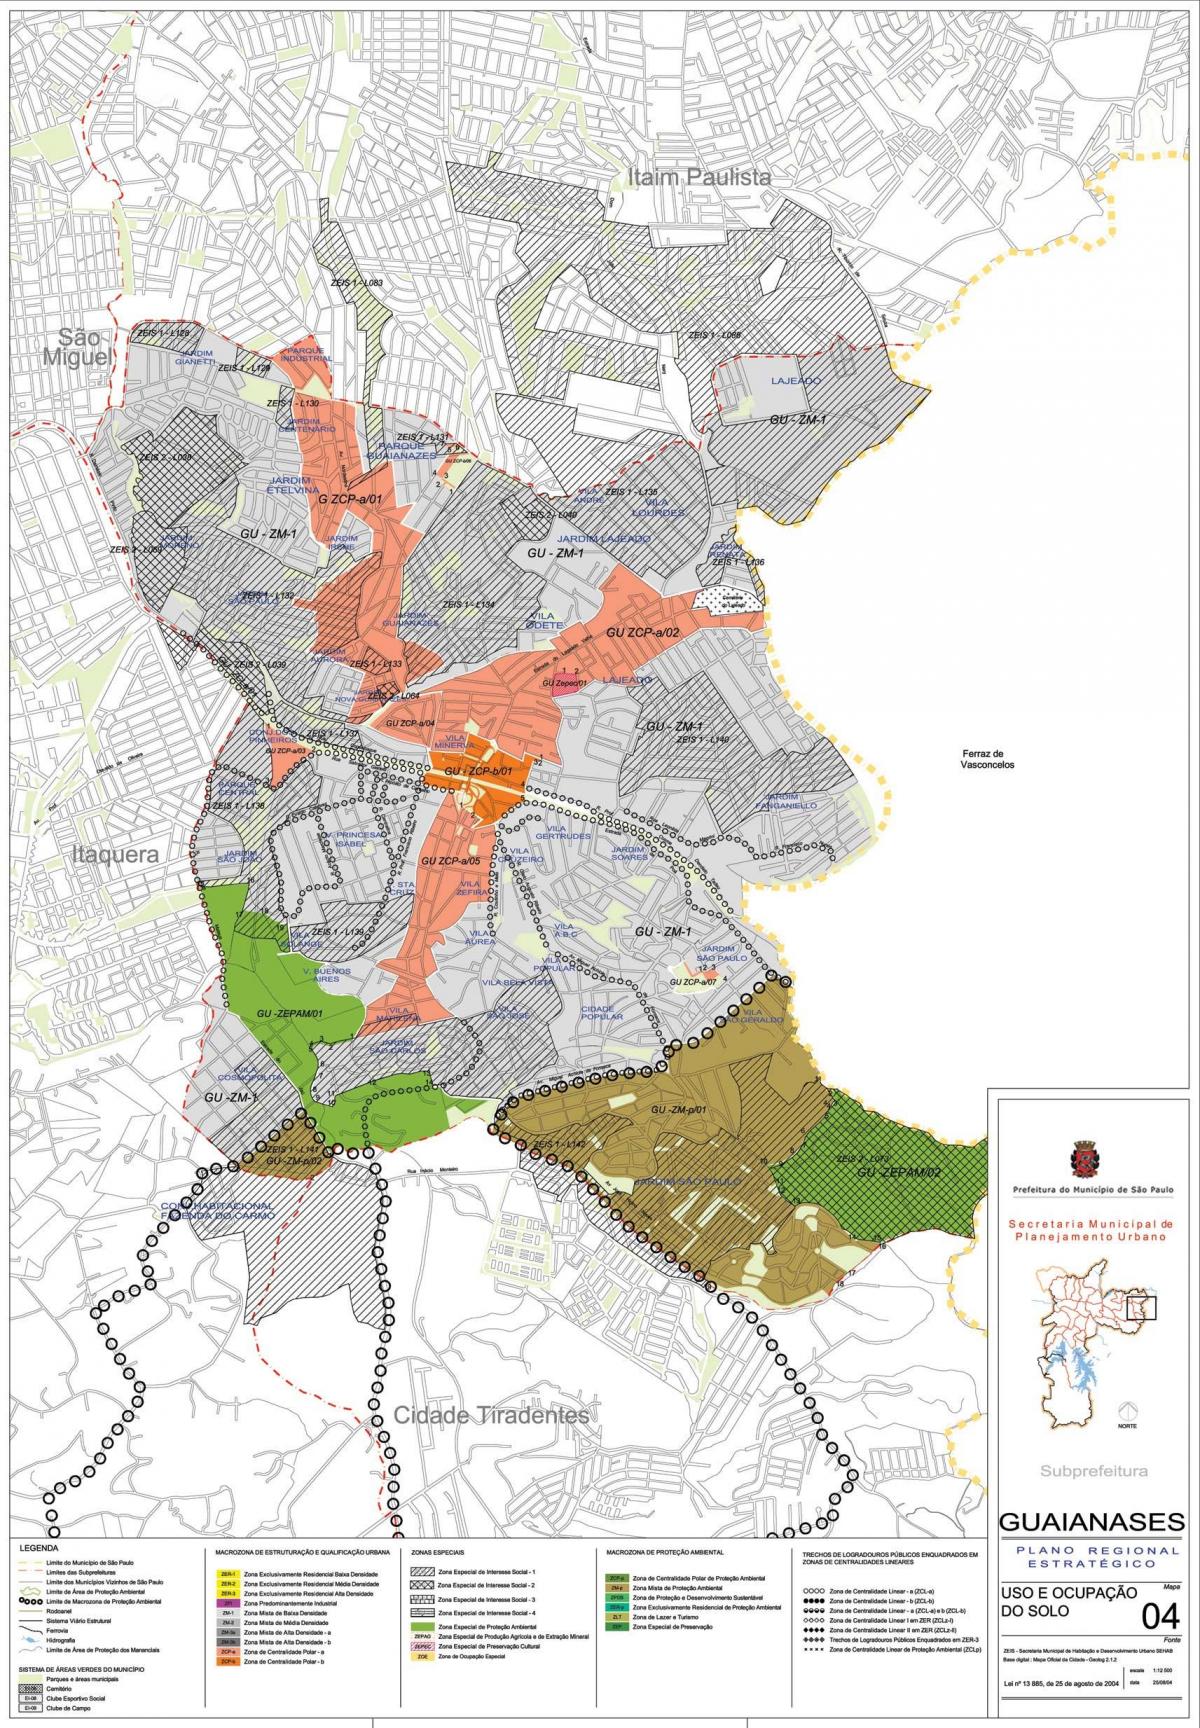 Mapa de Guaianases São Paulo - Ocupación do solo